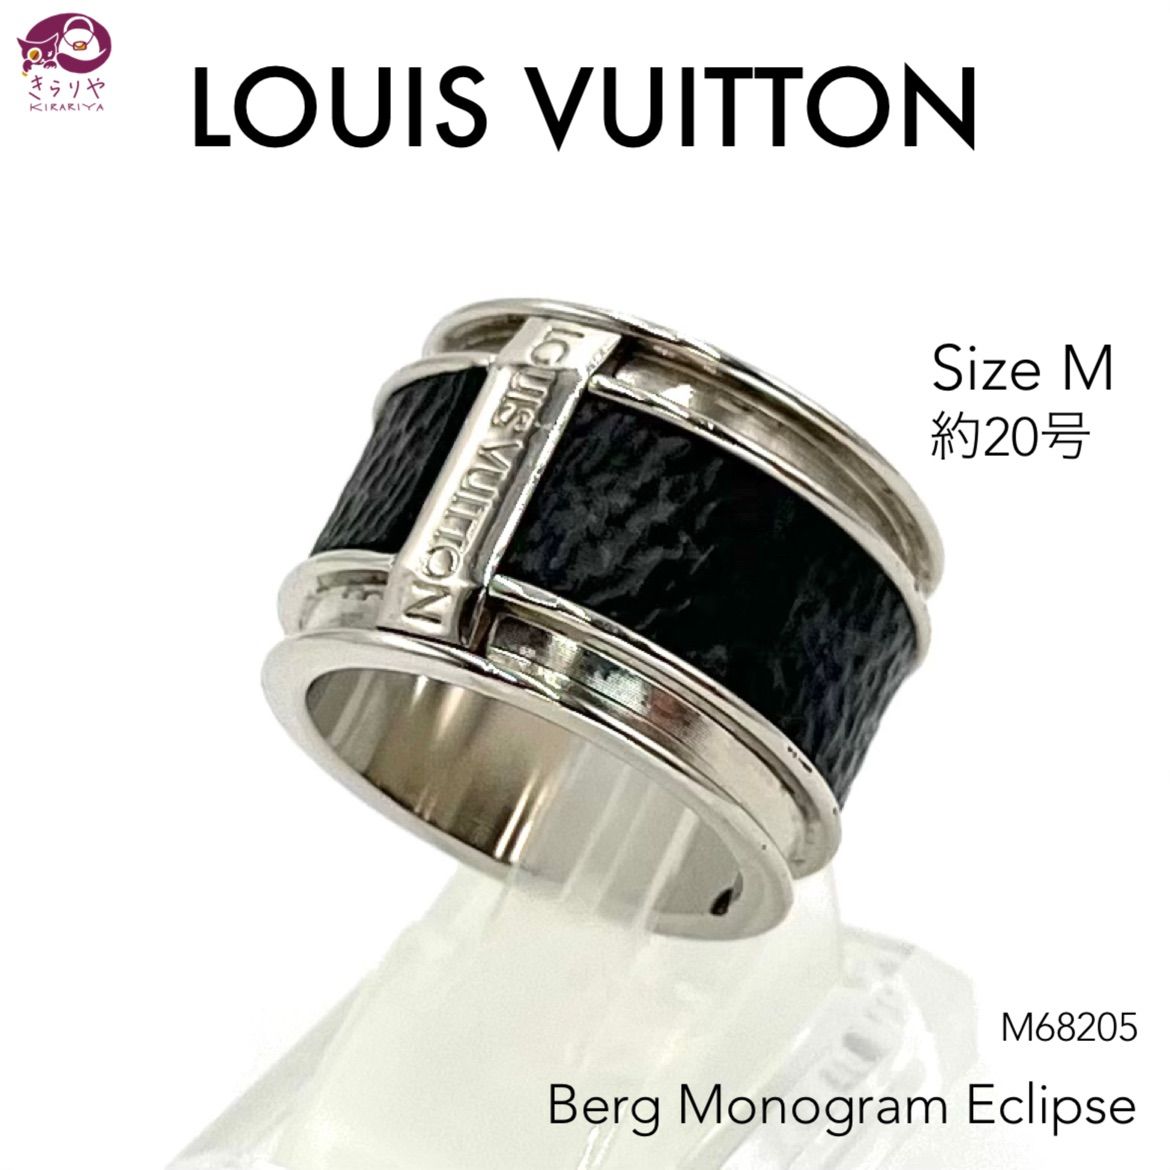 LOUIS VUITTON ルイヴィトン M68205 バーグ モノグラム エクリプス